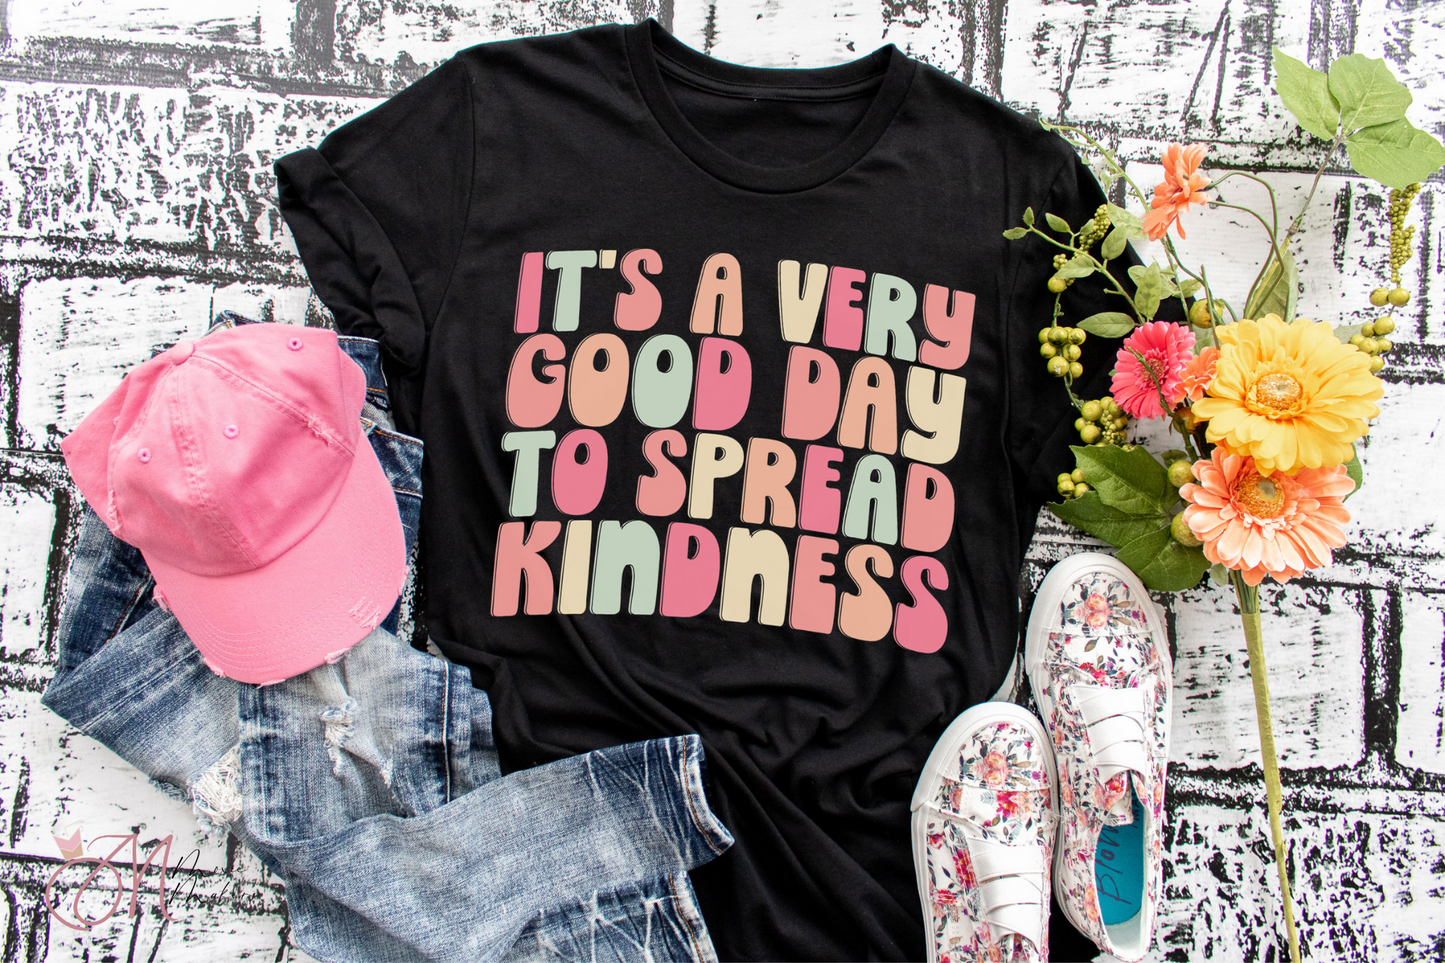 Spread Kindness Tee